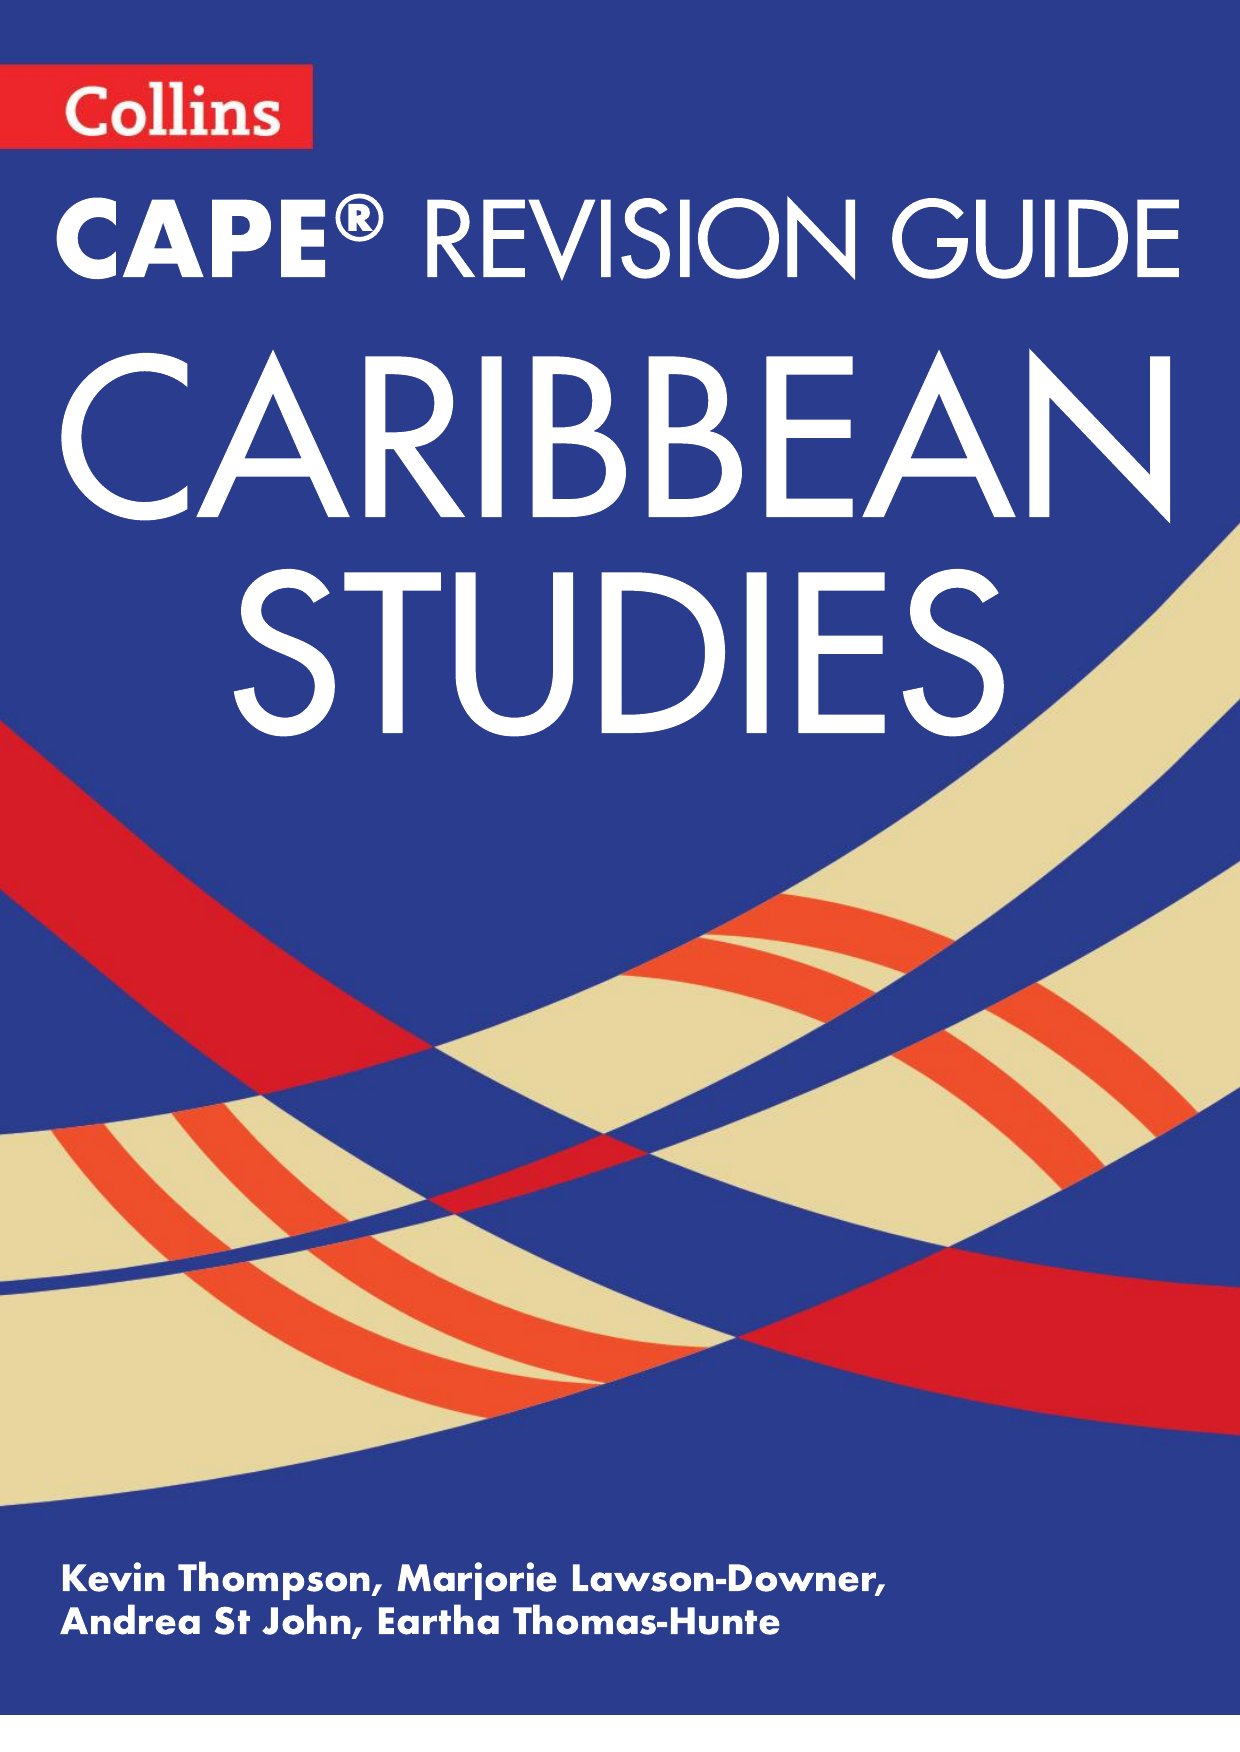 1240px x 1752px - Collins - CAPE Revision Guide - Caribbean Studies copy (1)